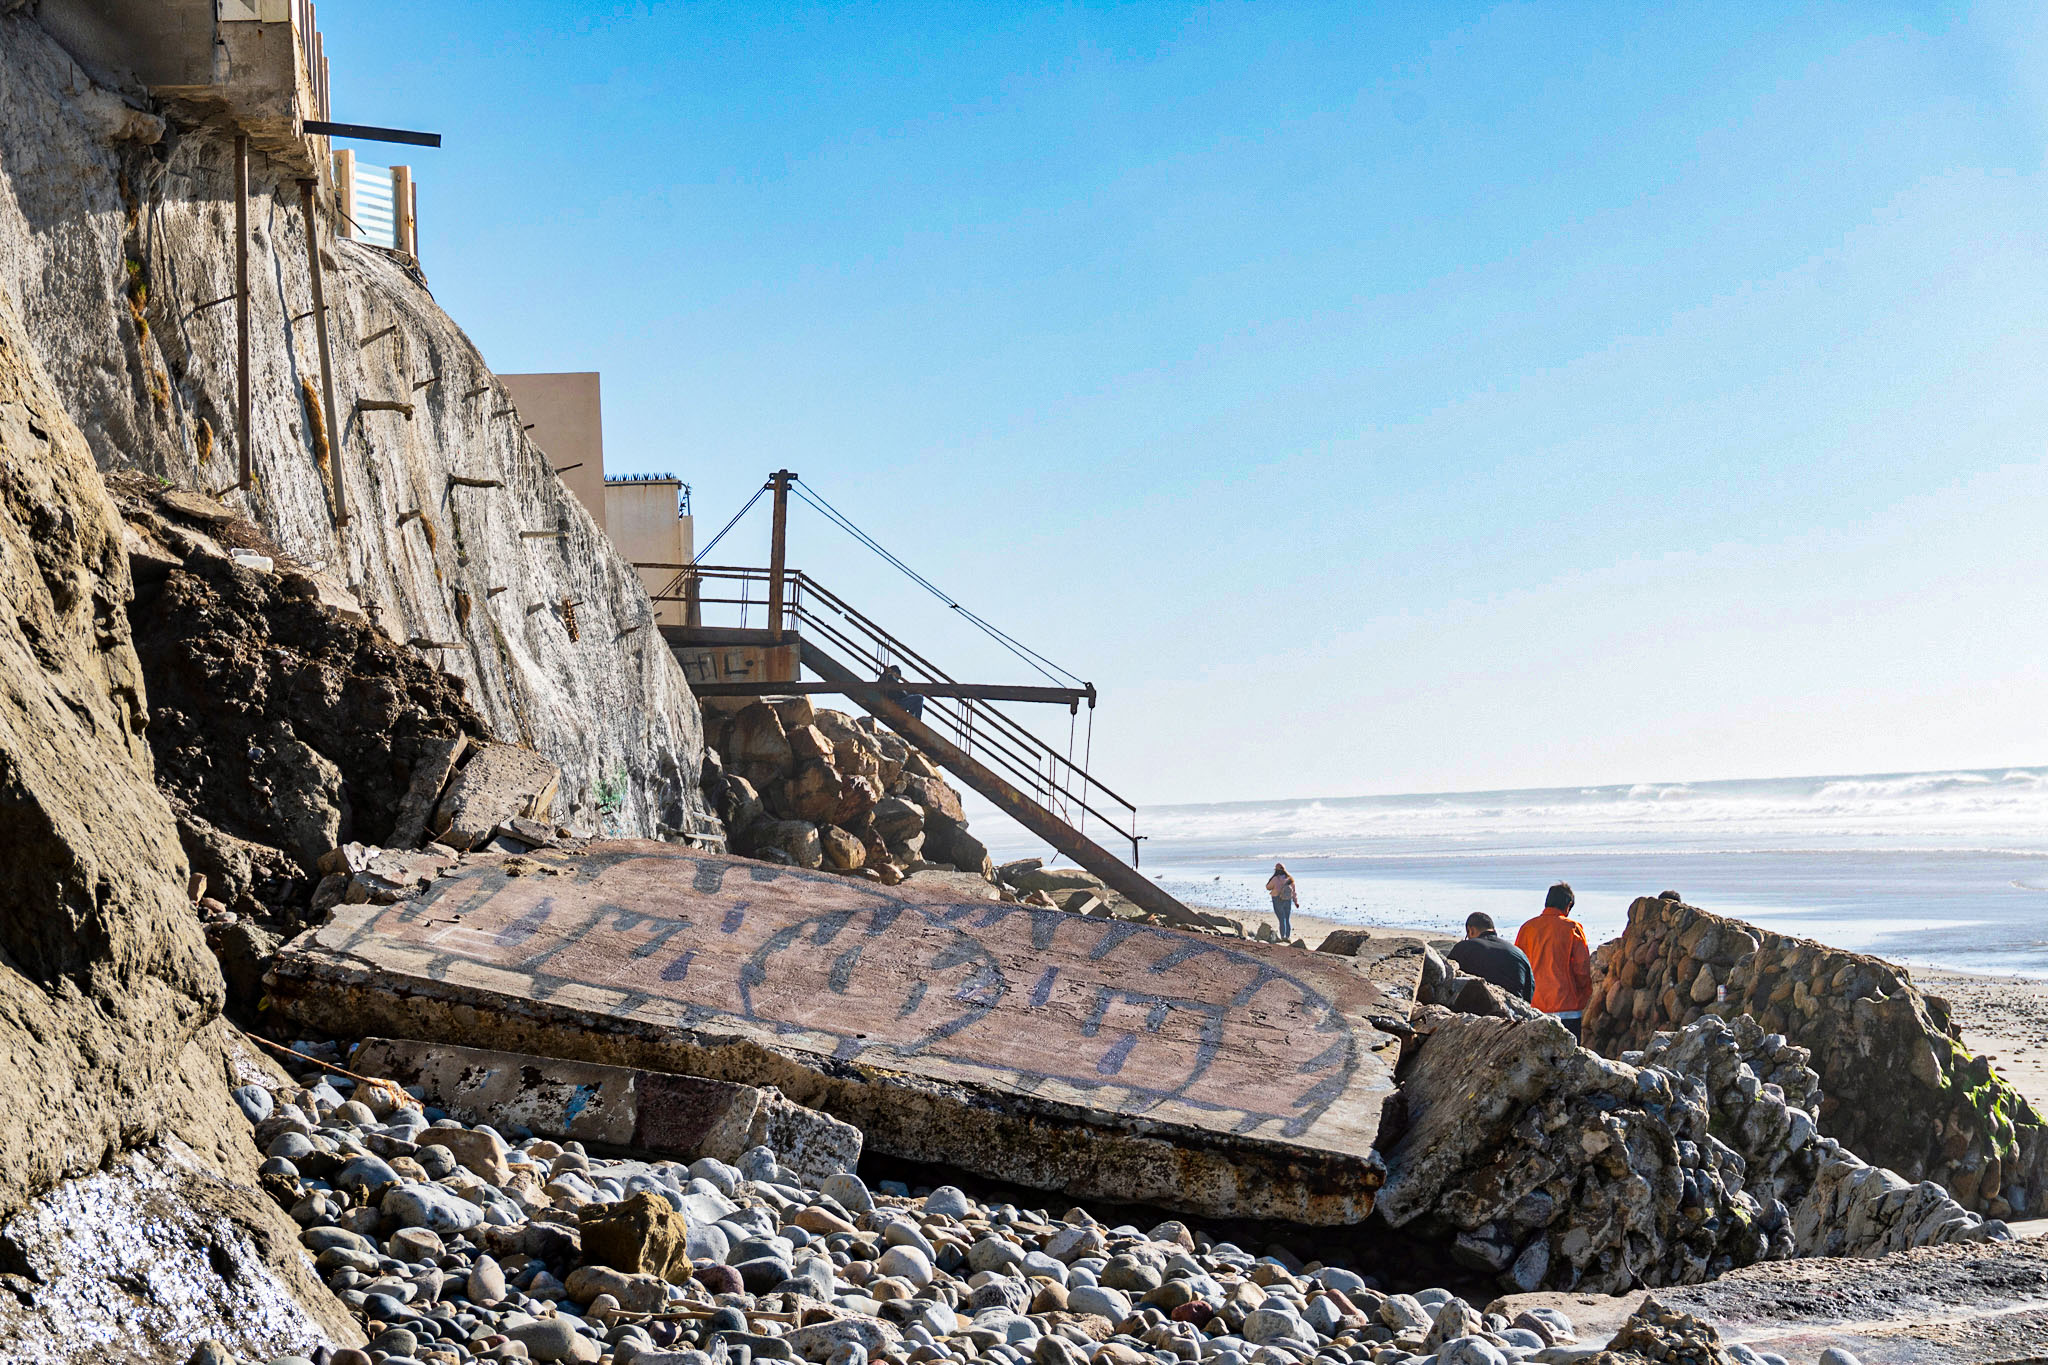 Playas de Tijuana Residuos fecales arrojados al mar impiden el turismo 5